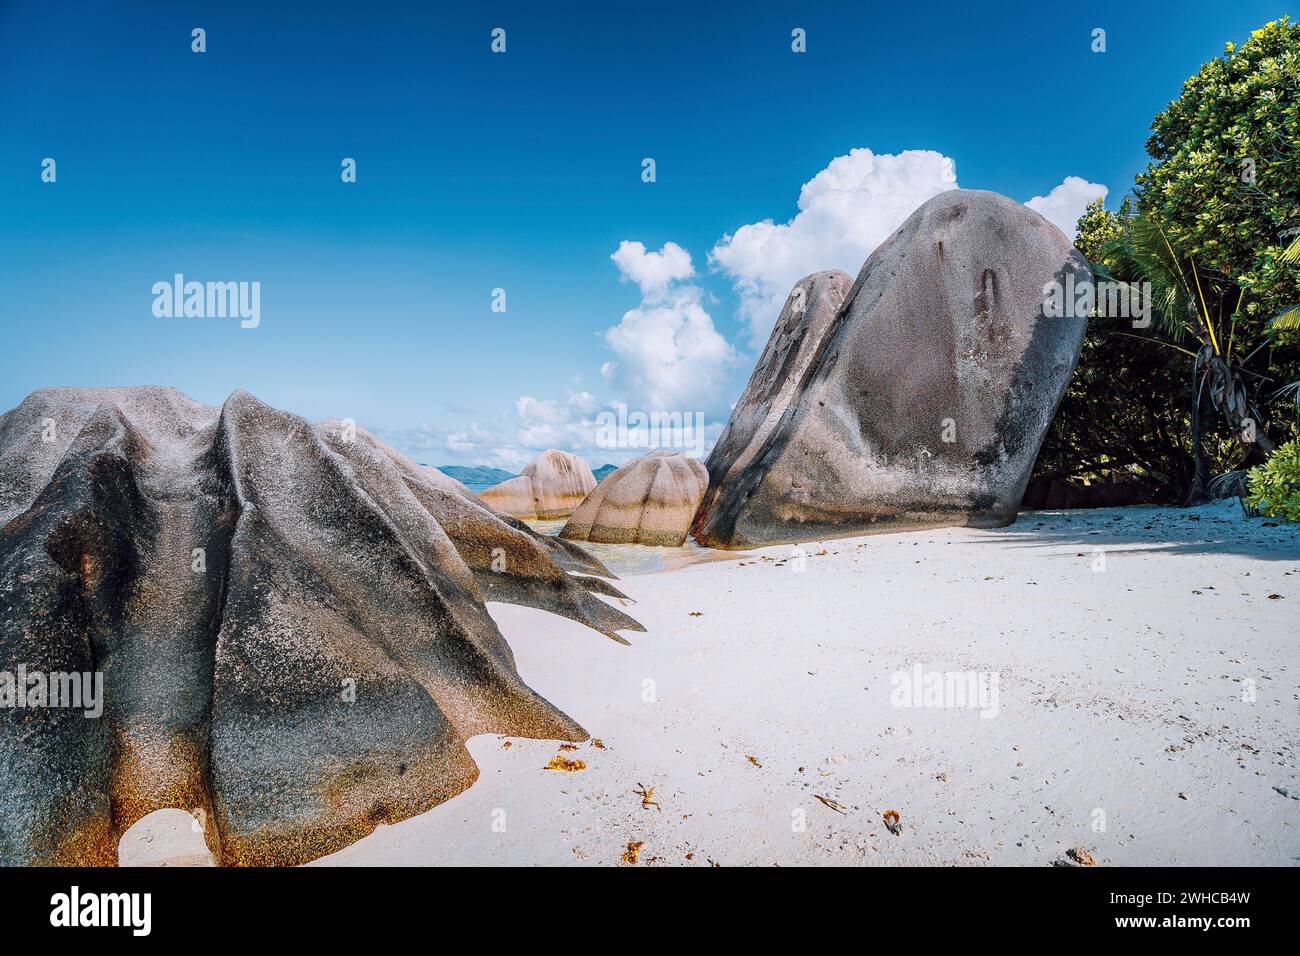 Anse Source d'Argent - incredibile spiaggia tropicale con enormi massi di granito sull'isola di la Digue, Seychelles. Foto Stock